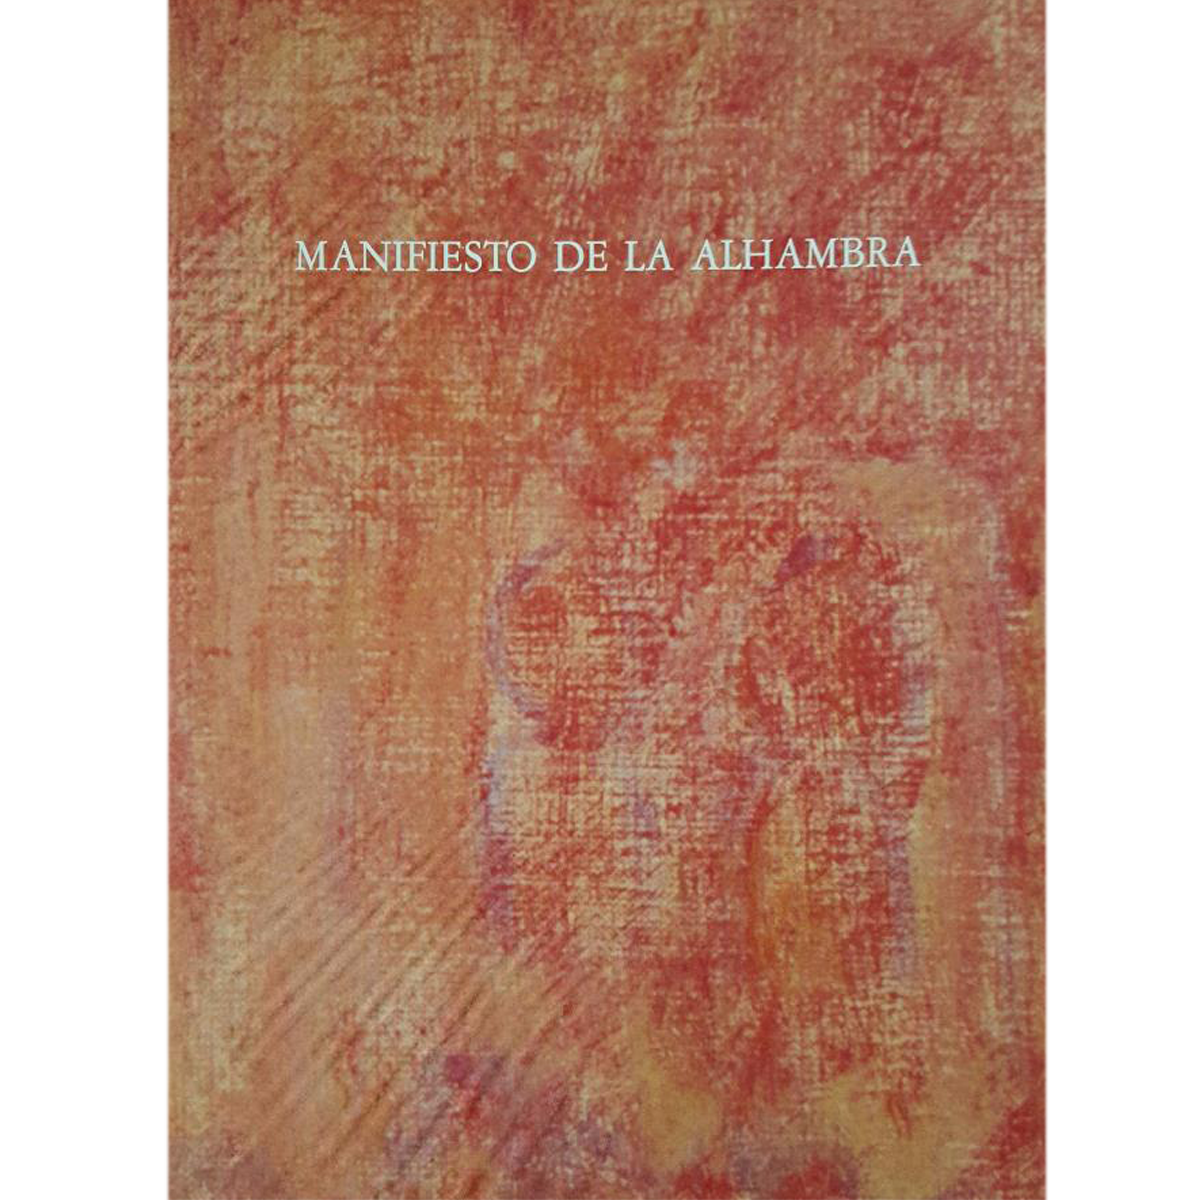 Manifiesto de la Alhambra